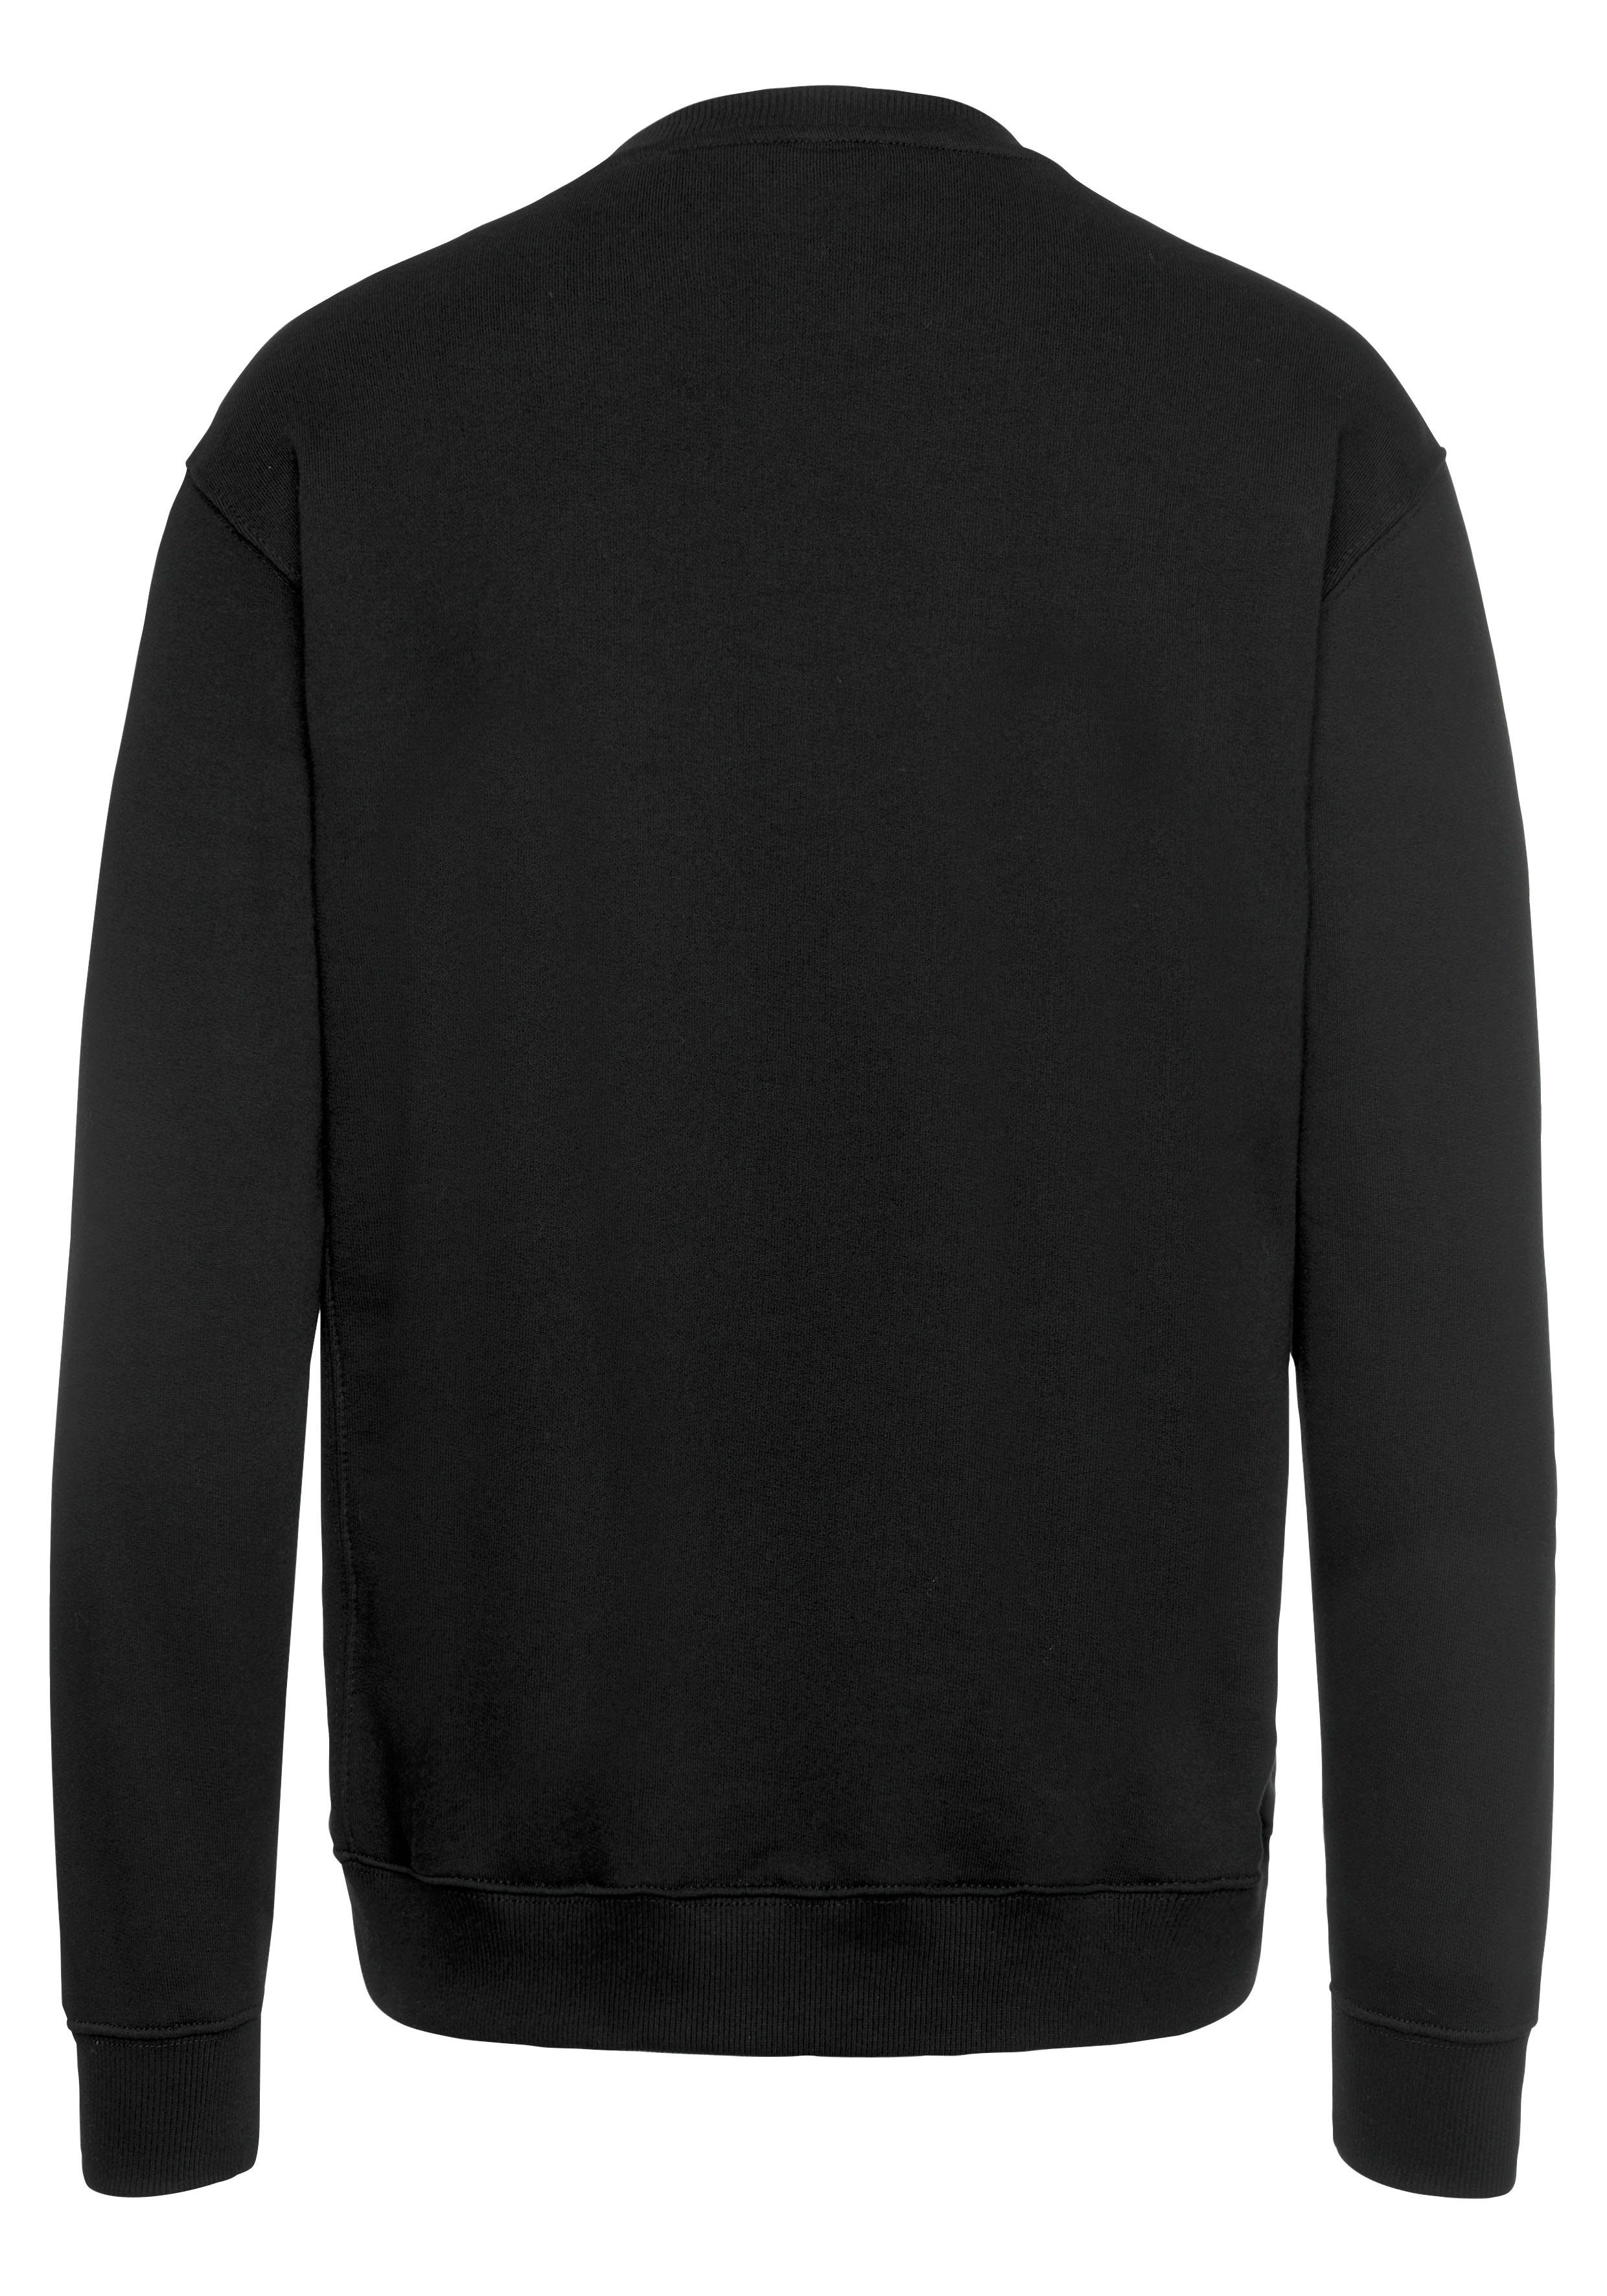 Lee® Sweatshirt black